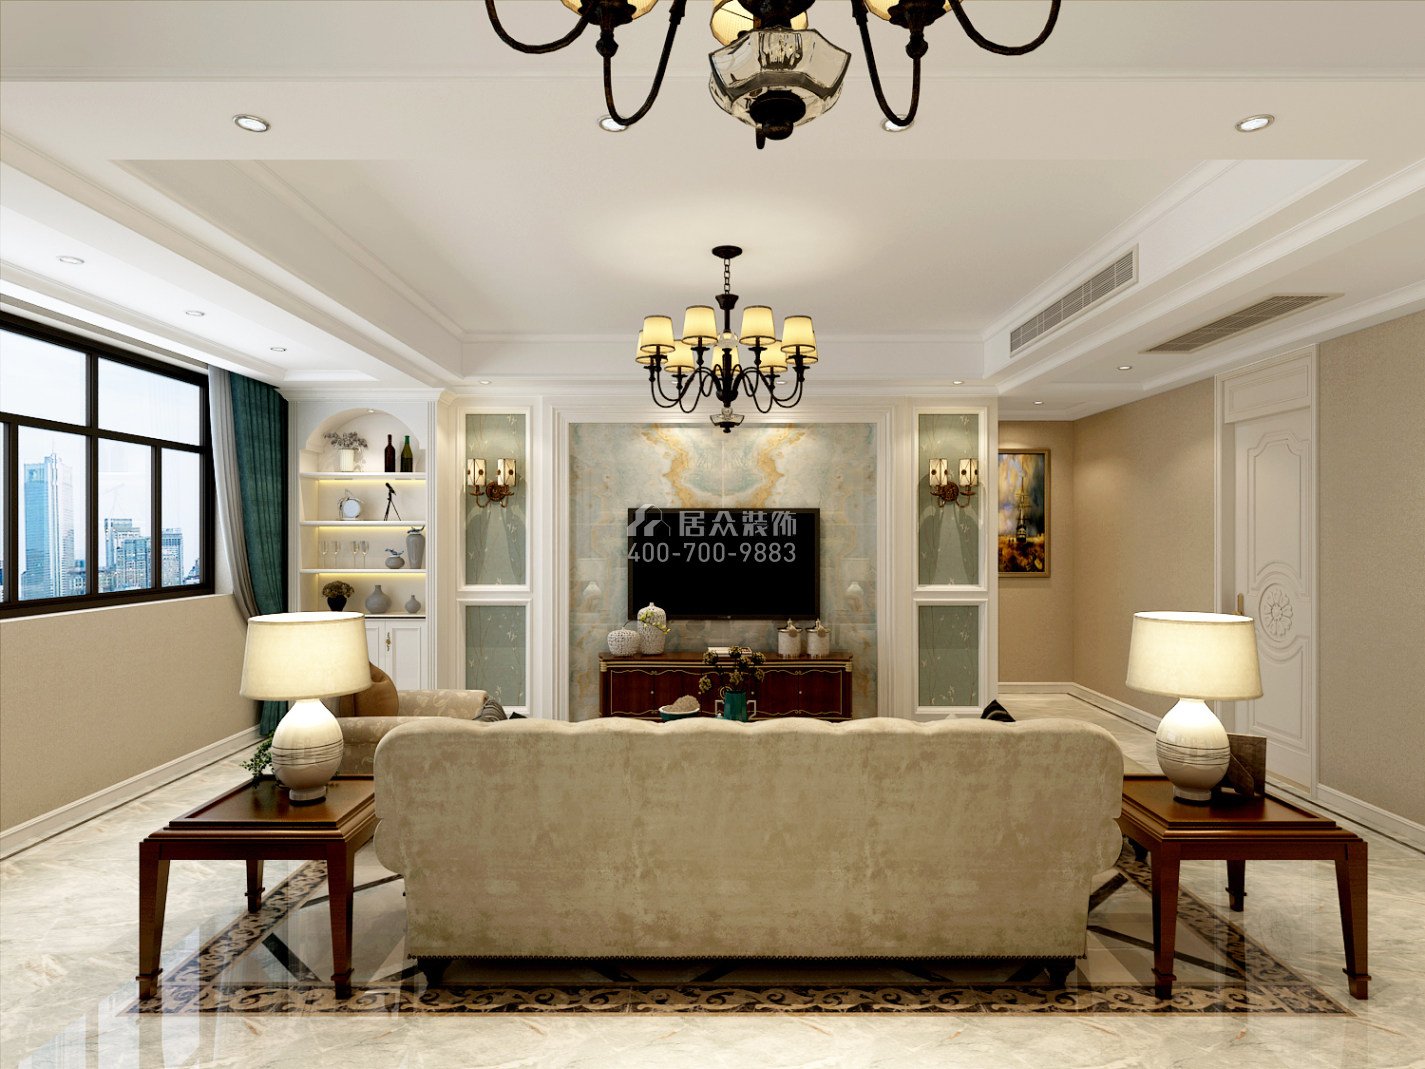 紫御华庭134平方米美式风格平层户型客厅装修效果图